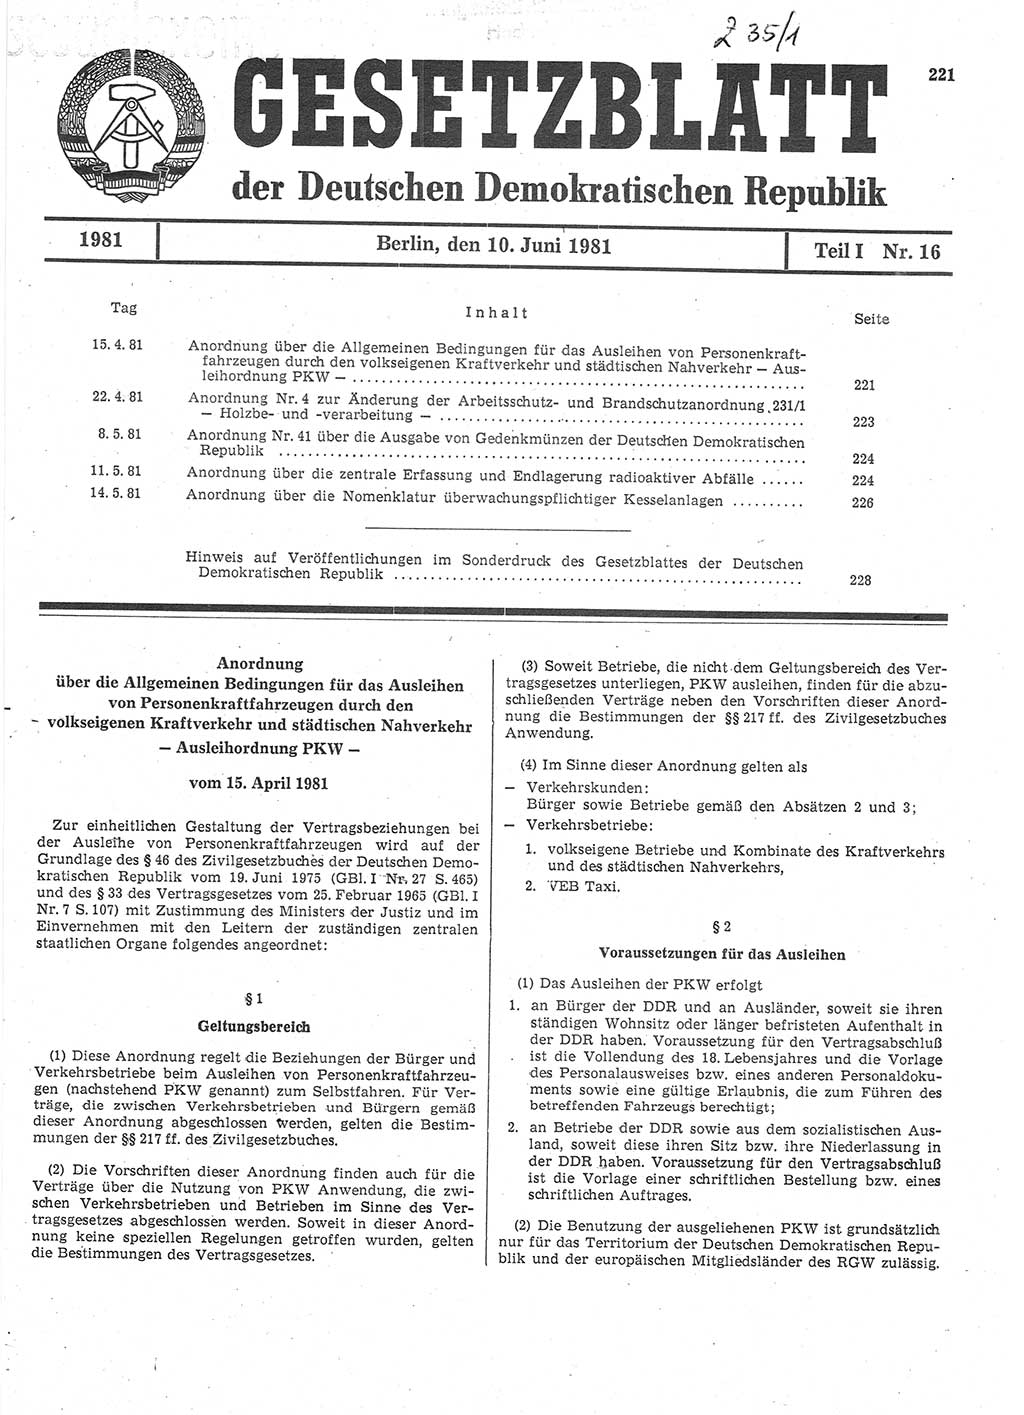 Gesetzblatt (GBl.) der Deutschen Demokratischen Republik (DDR) Teil Ⅰ 1981, Seite 221 (GBl. DDR Ⅰ 1981, S. 221)